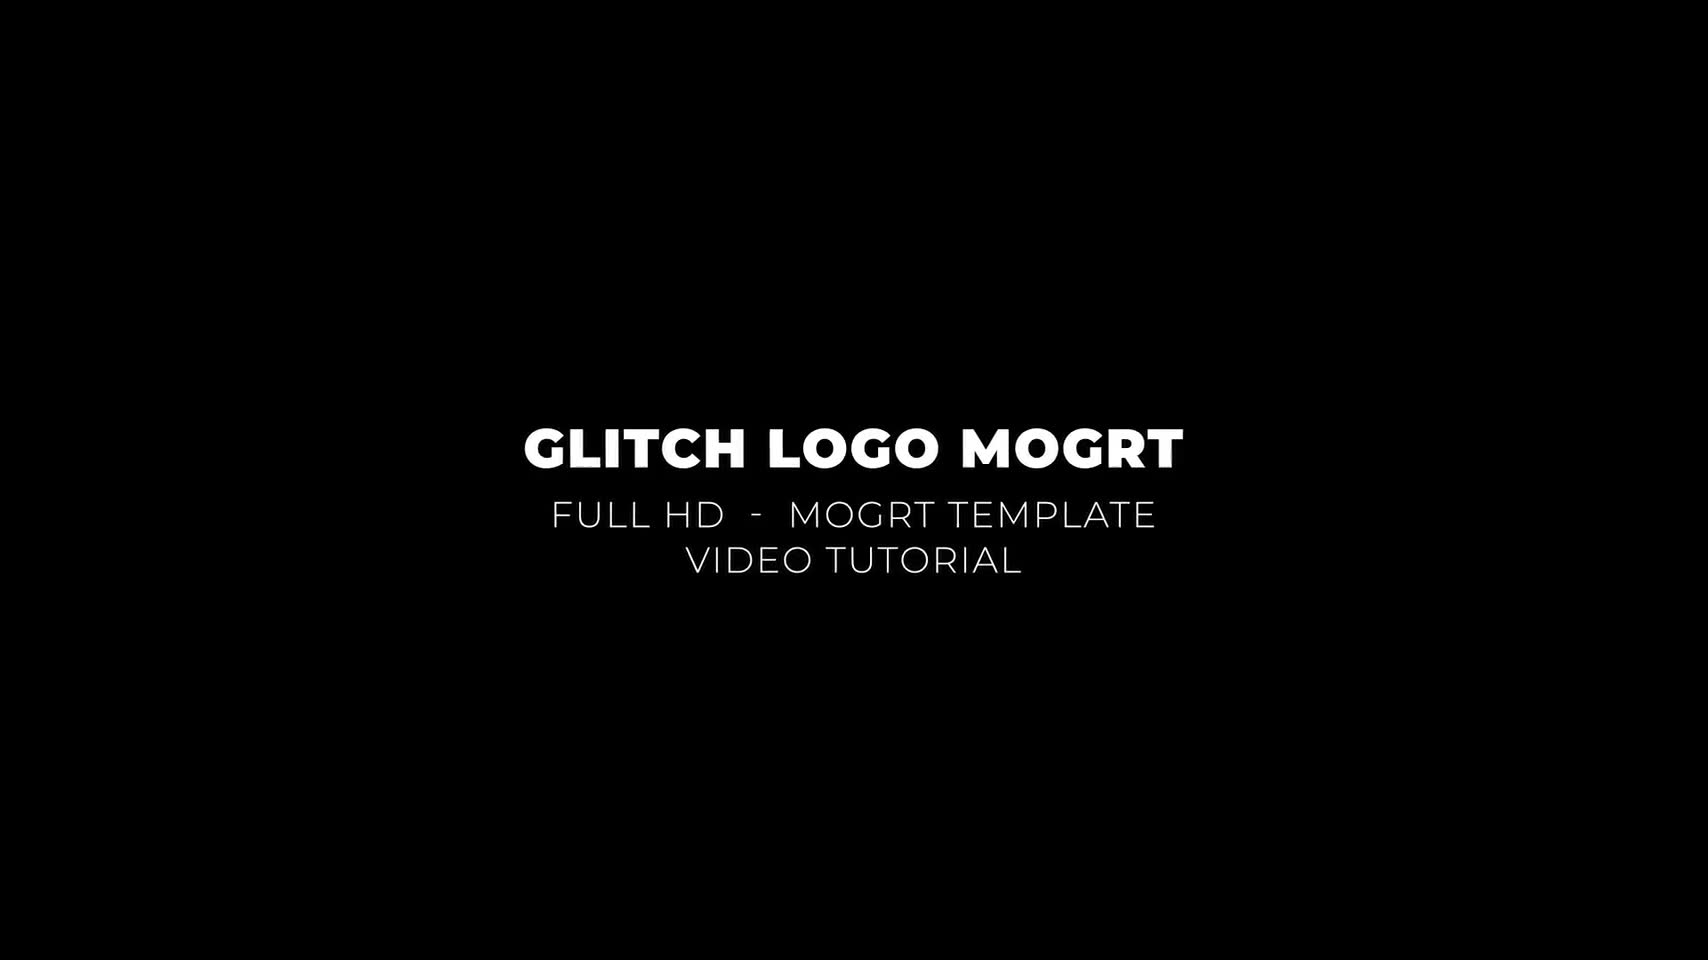 Glitch Logo Mogrt Videohive 24311897 Premiere Pro Image 2